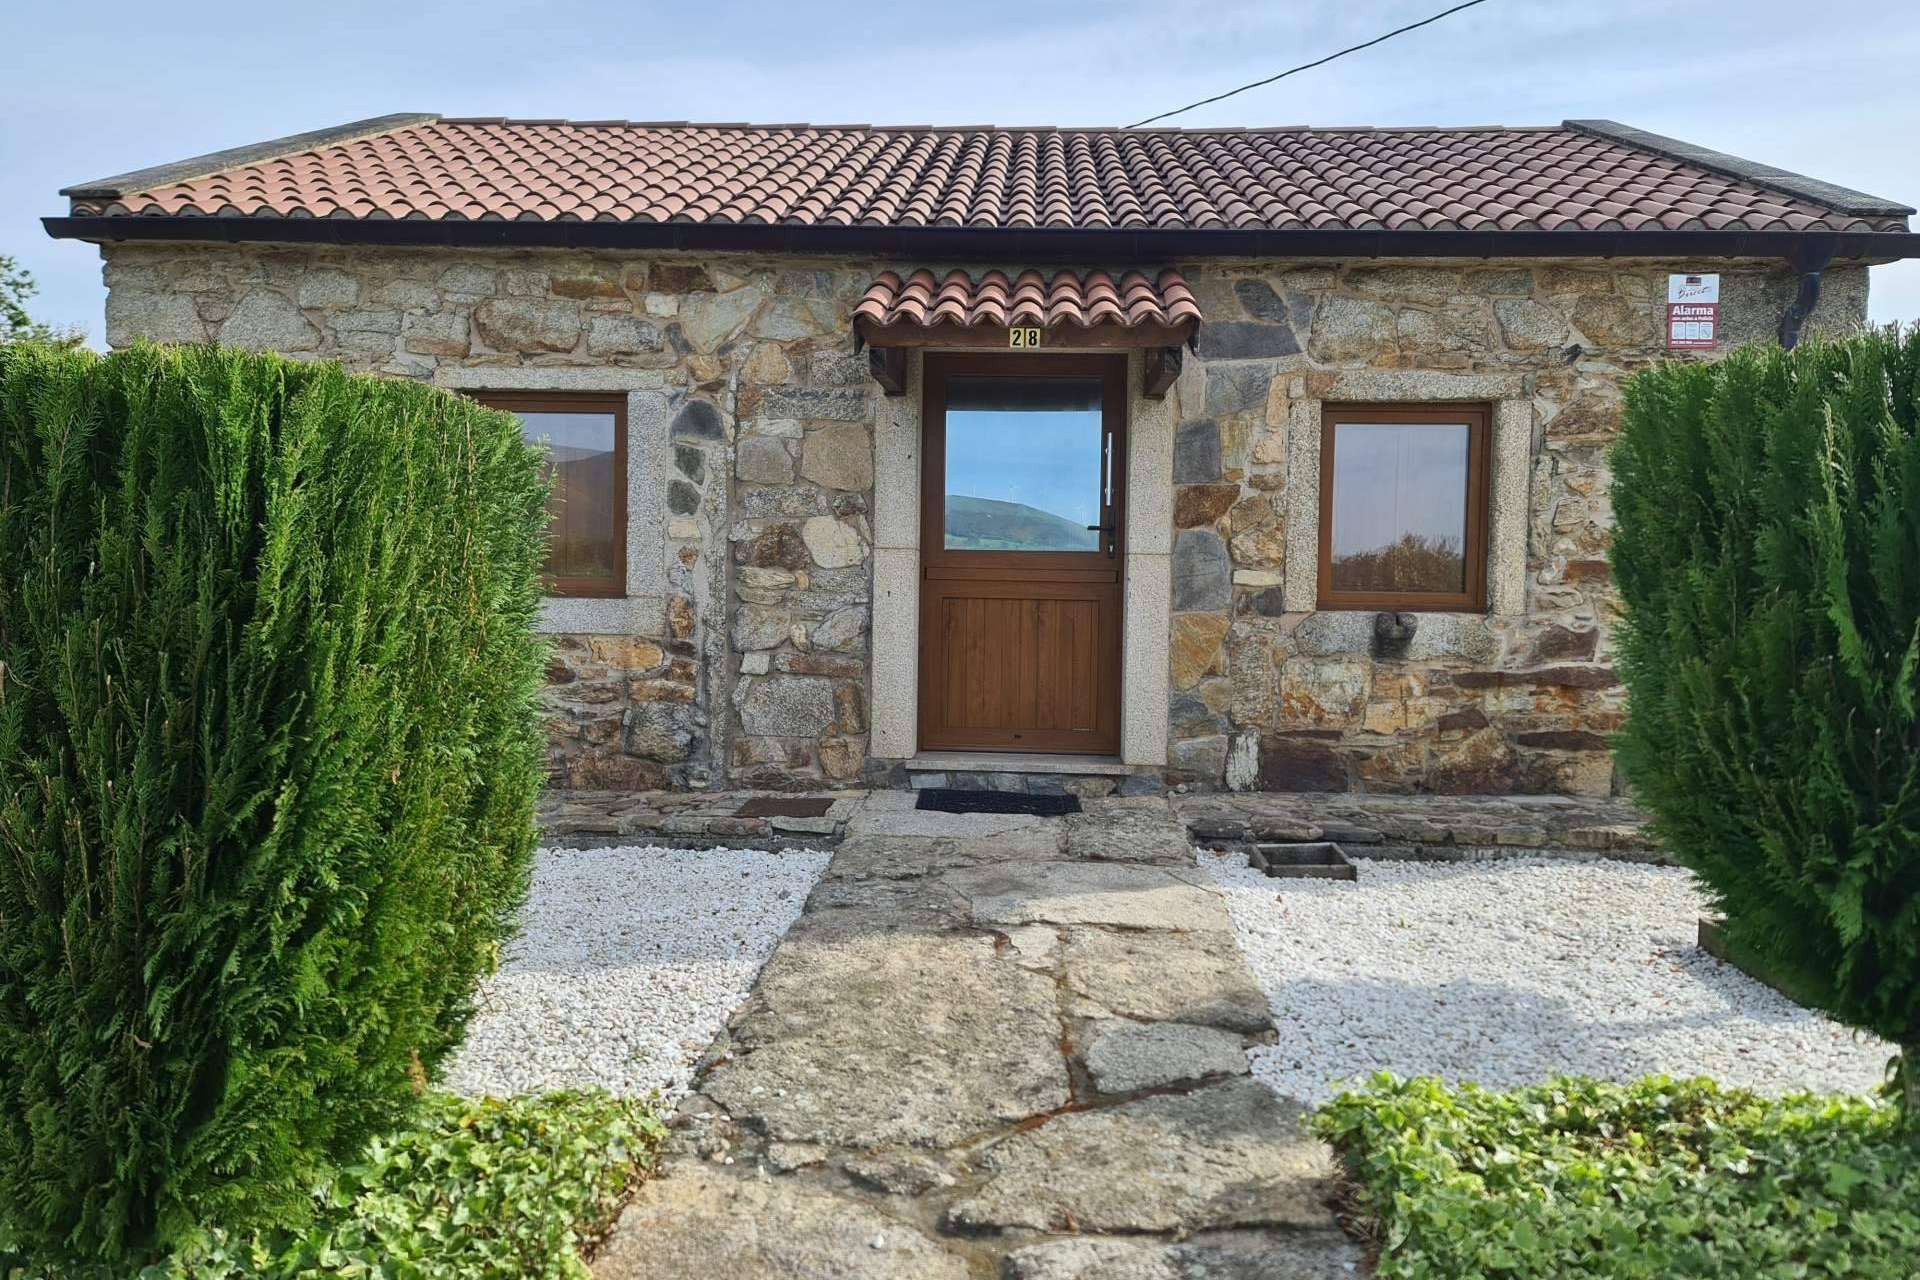  Casas Completas, la plataforma para encontrar una casa de vacaciones en Galicia 